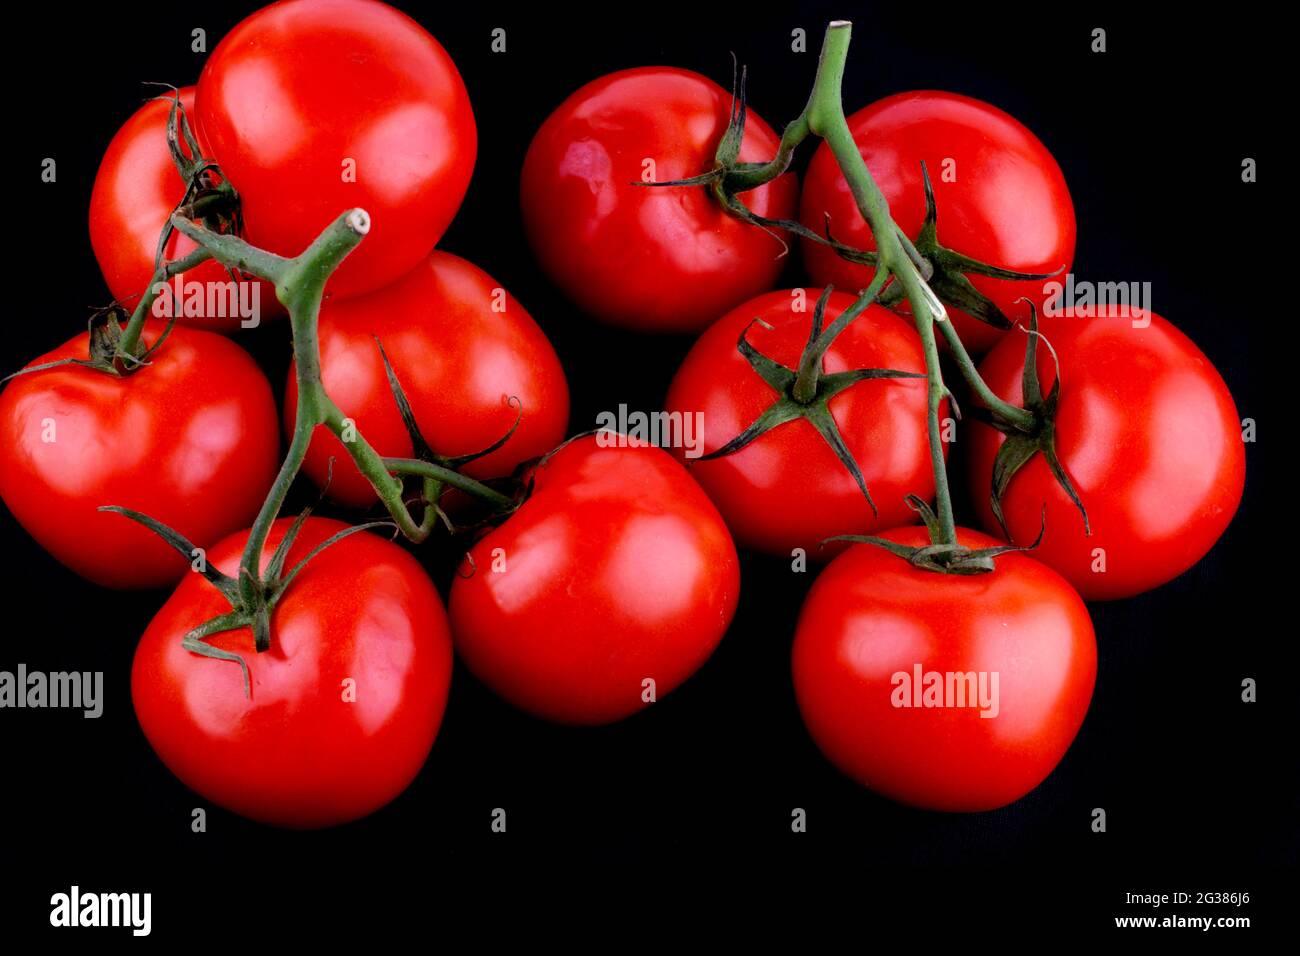 Pomodoro rosso con gambo, isolato su nero. Il pomodoro è la bacca commestibile della pianta Solanum lycopersicum, comunemente nota come pianta di pomodoro. Andalucia, Foto Stock